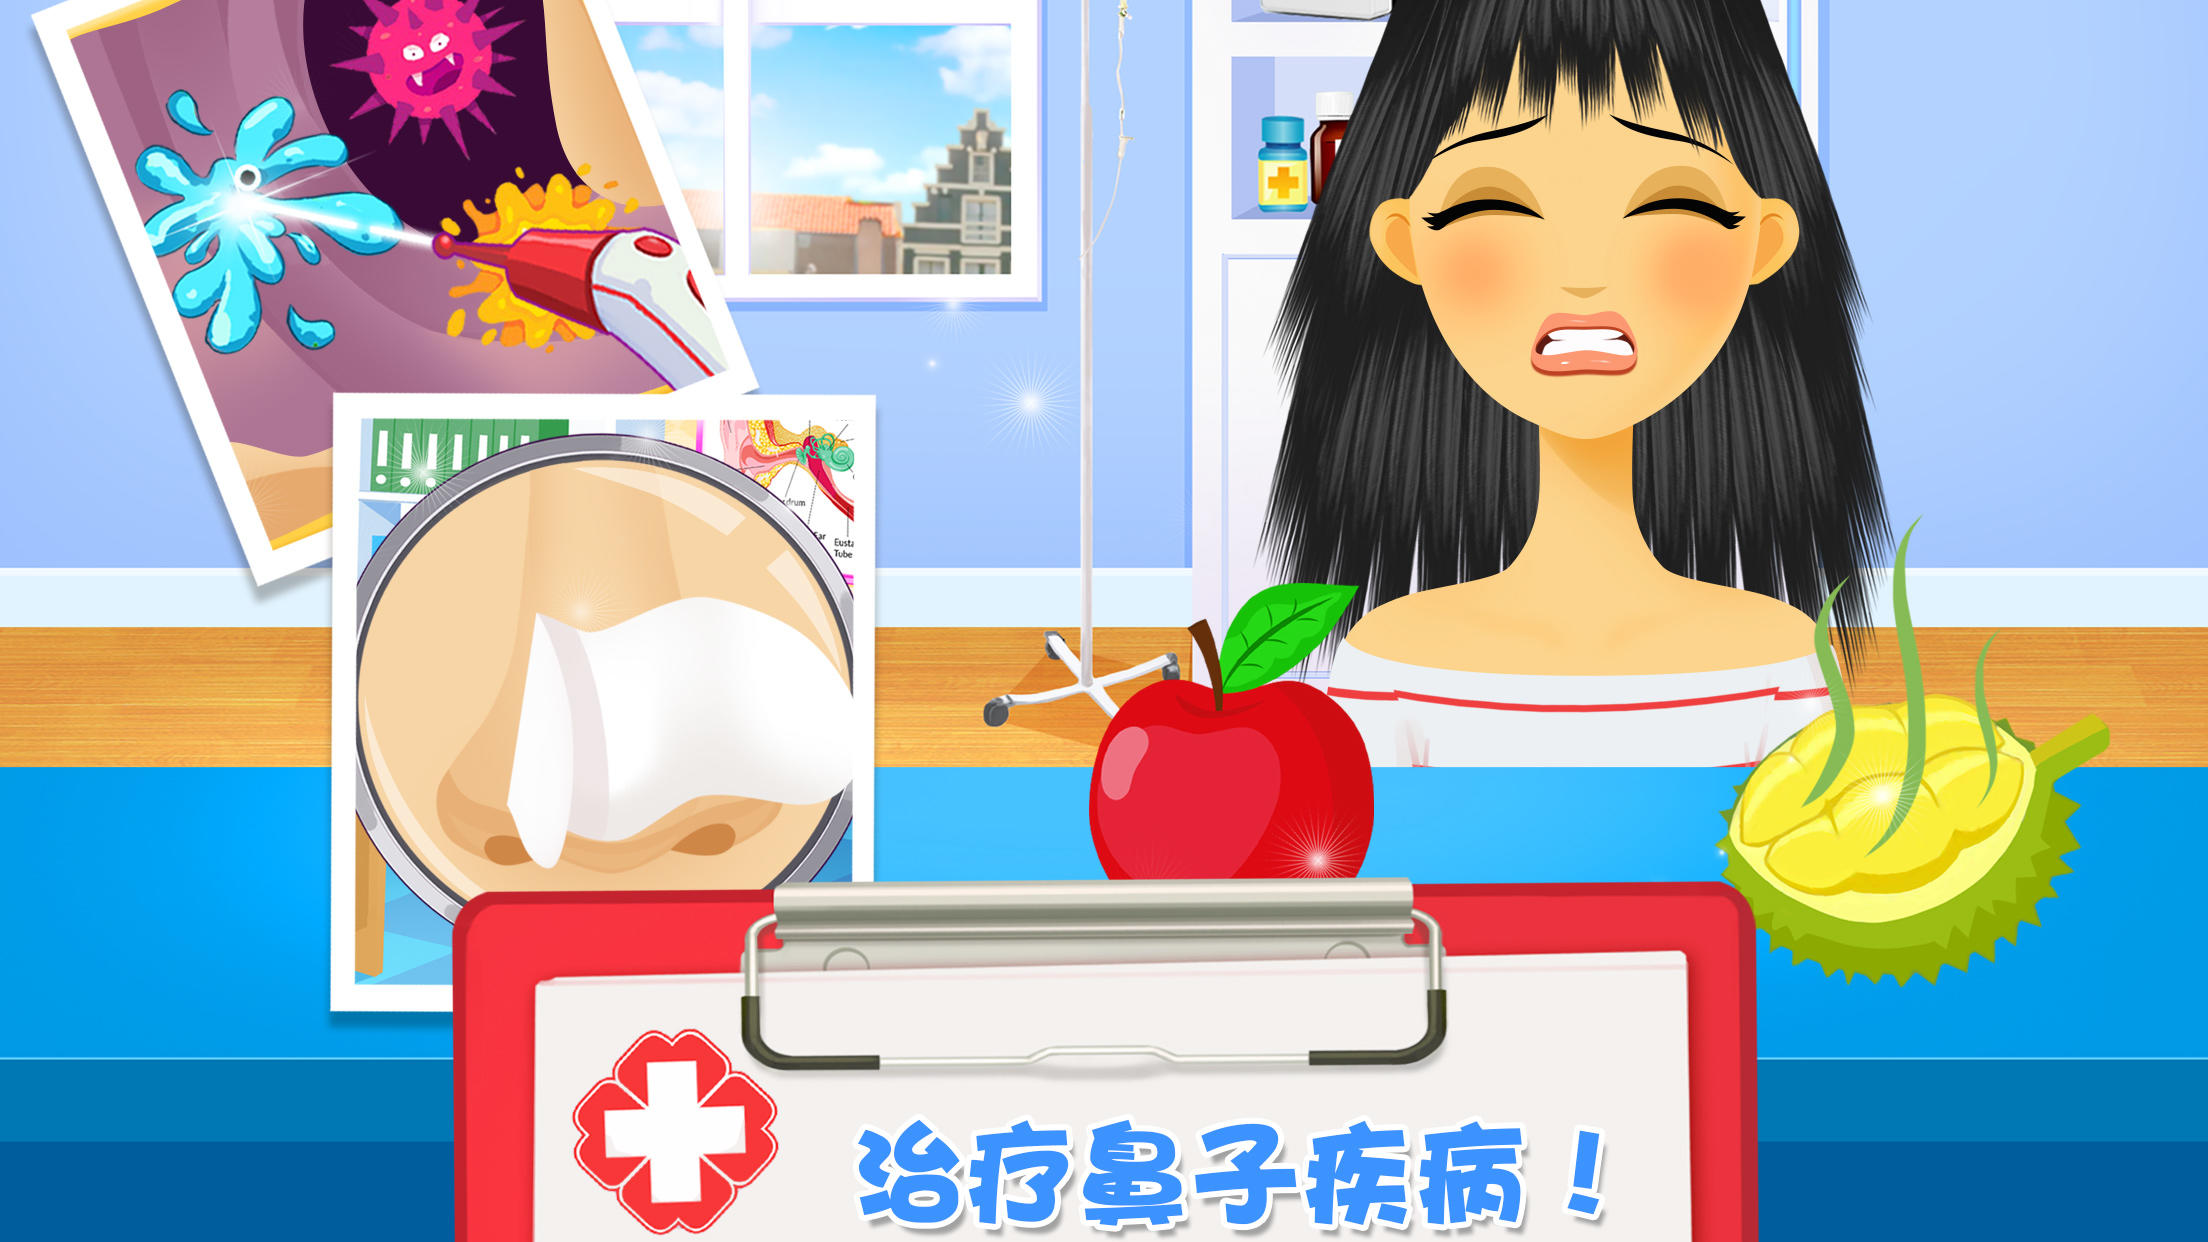 女生游戏: 医生诊所模拟宝宝换装化妆照顾小游戏游戏截图